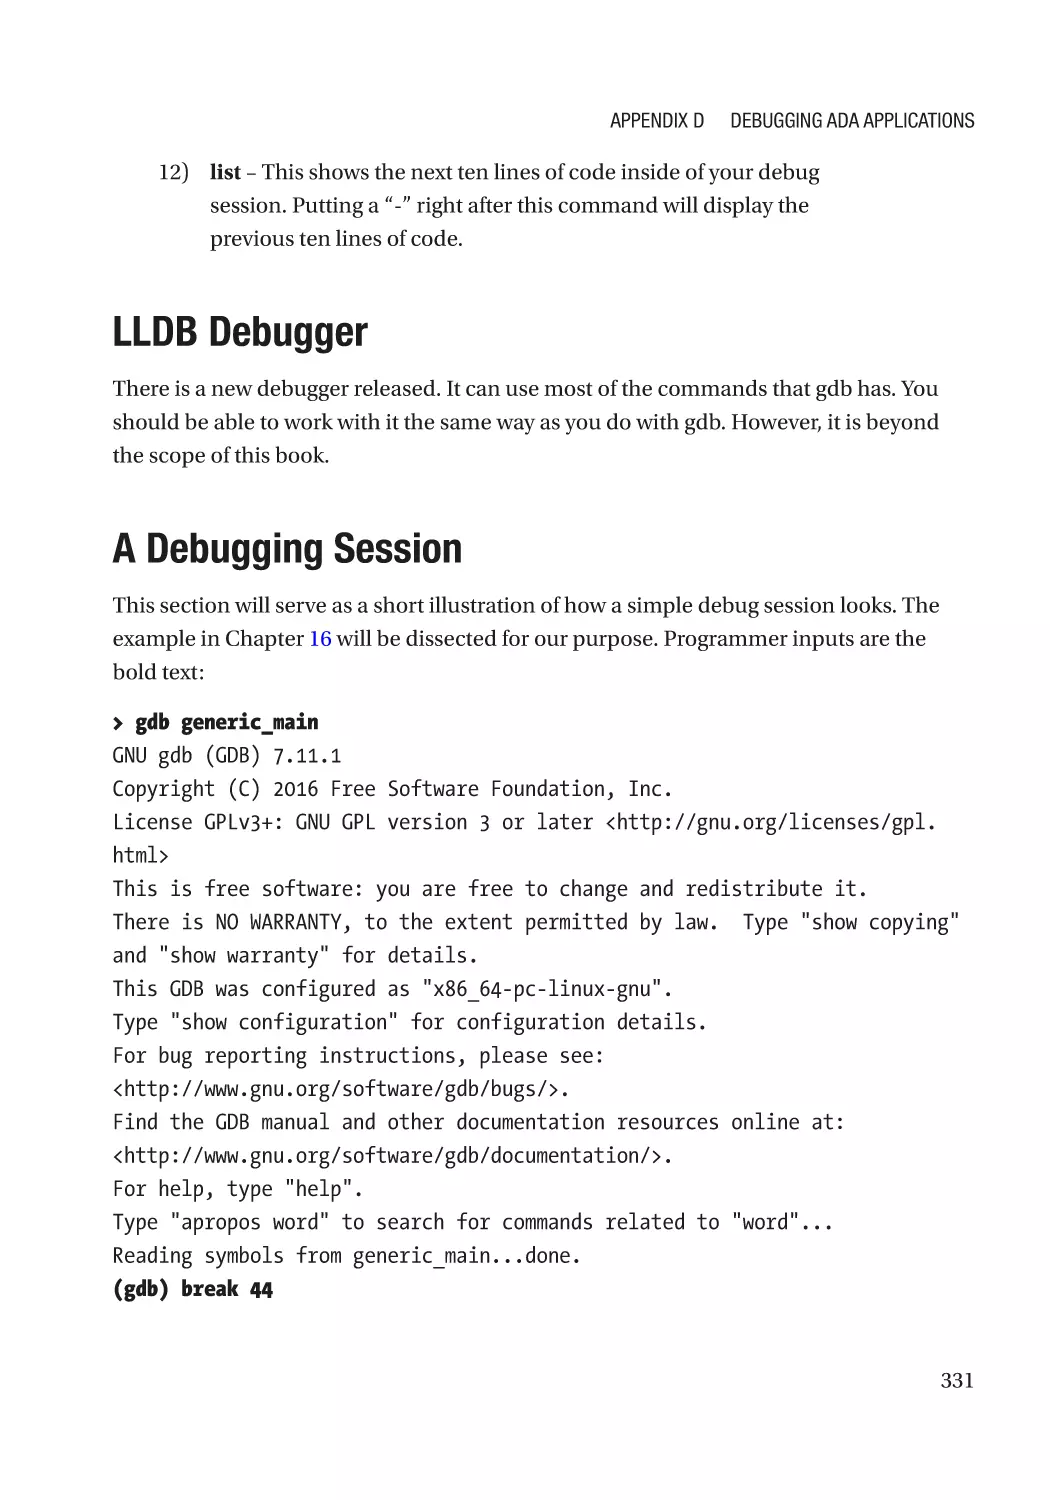 LLDB Debugger
A Debugging Session